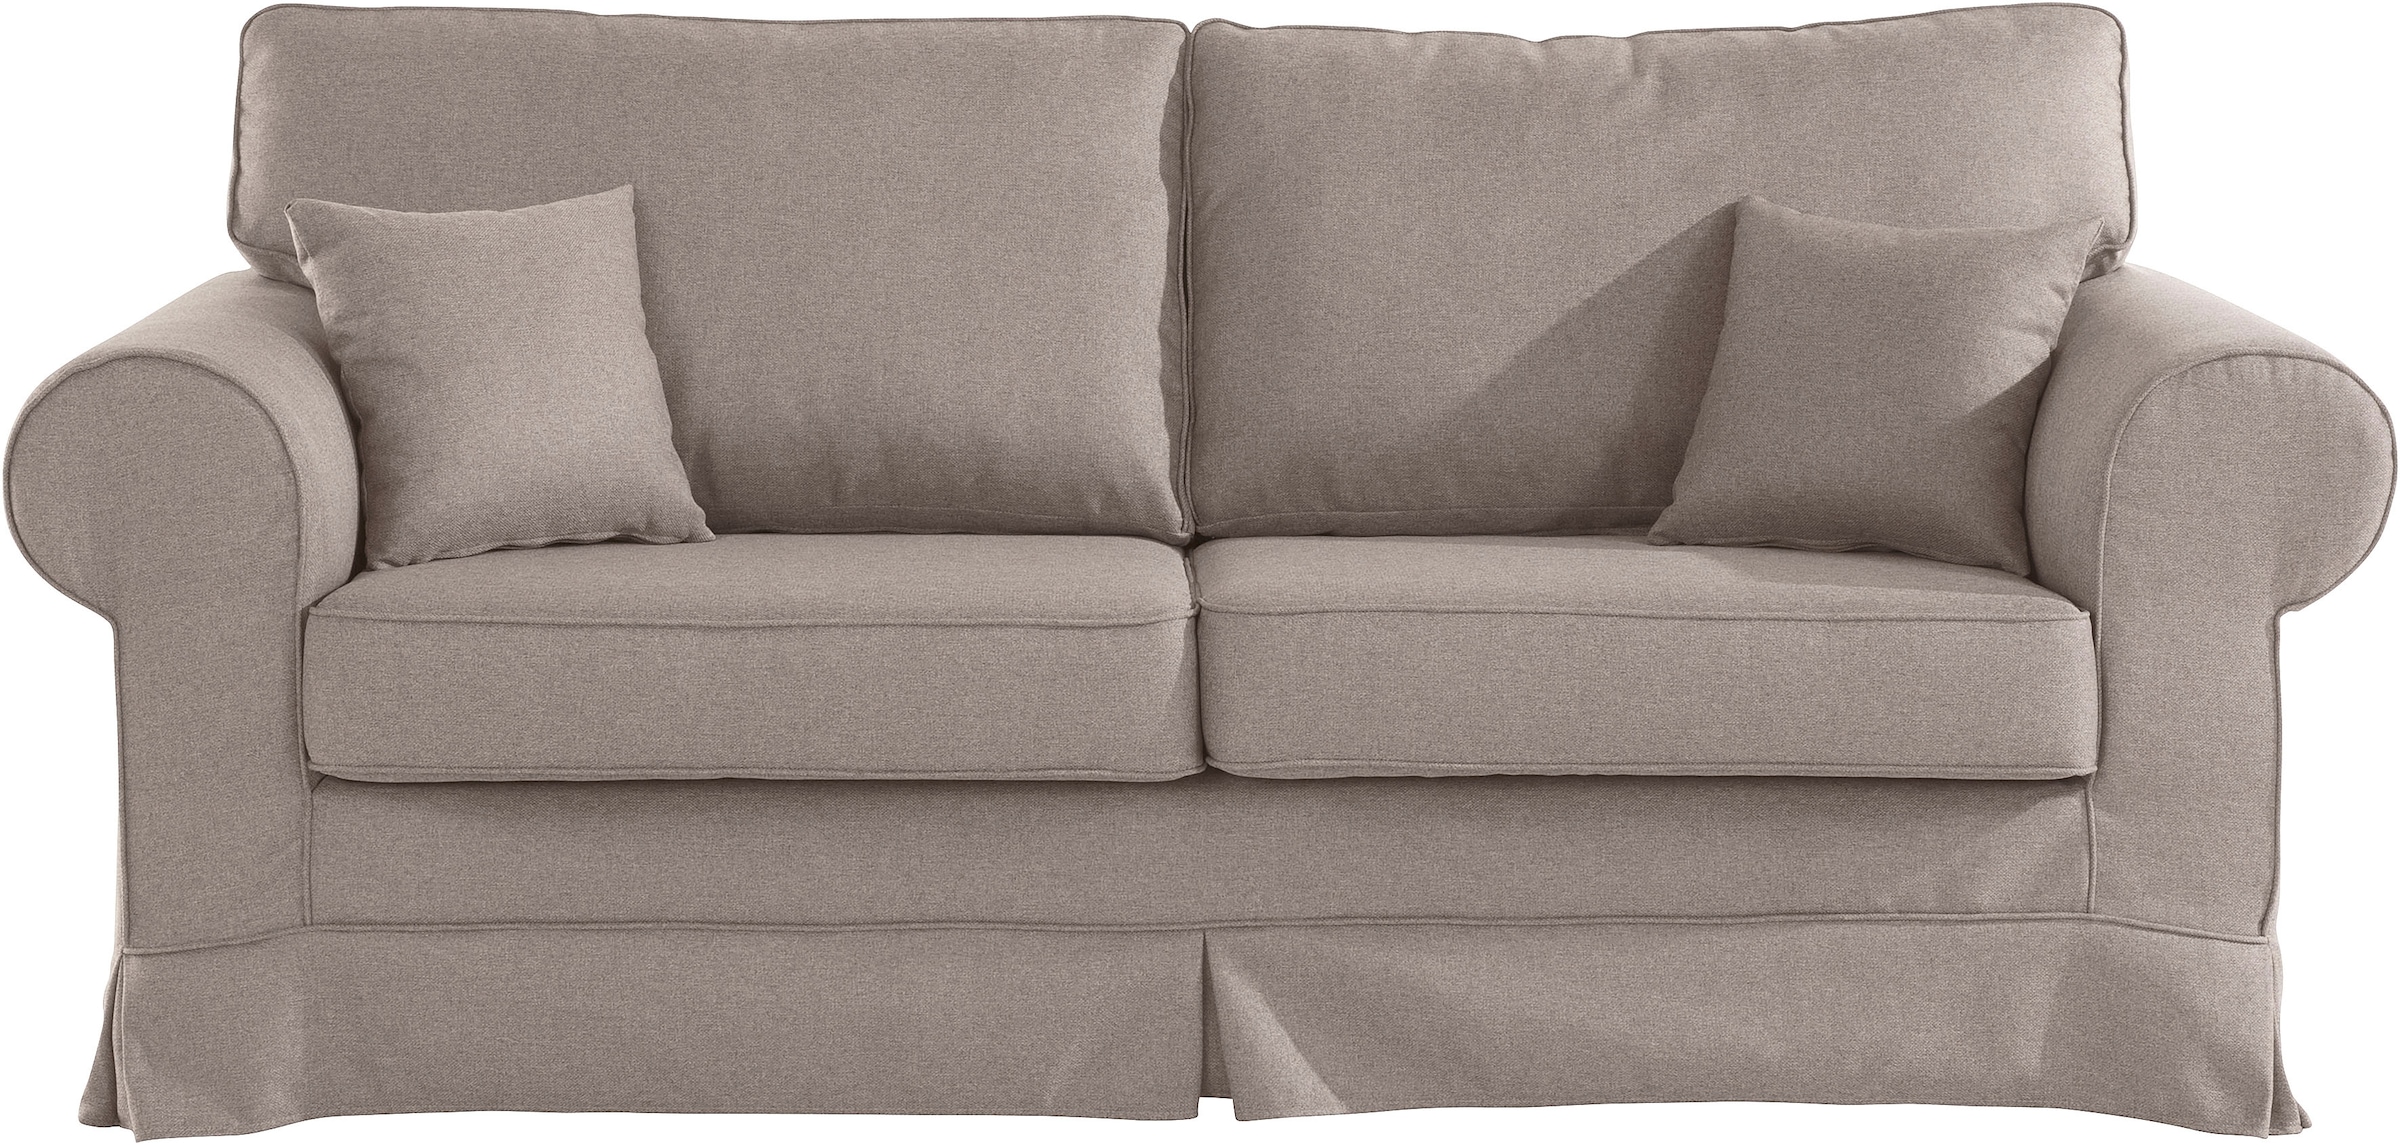 Trendige kaufen Couchbezug Stretch online